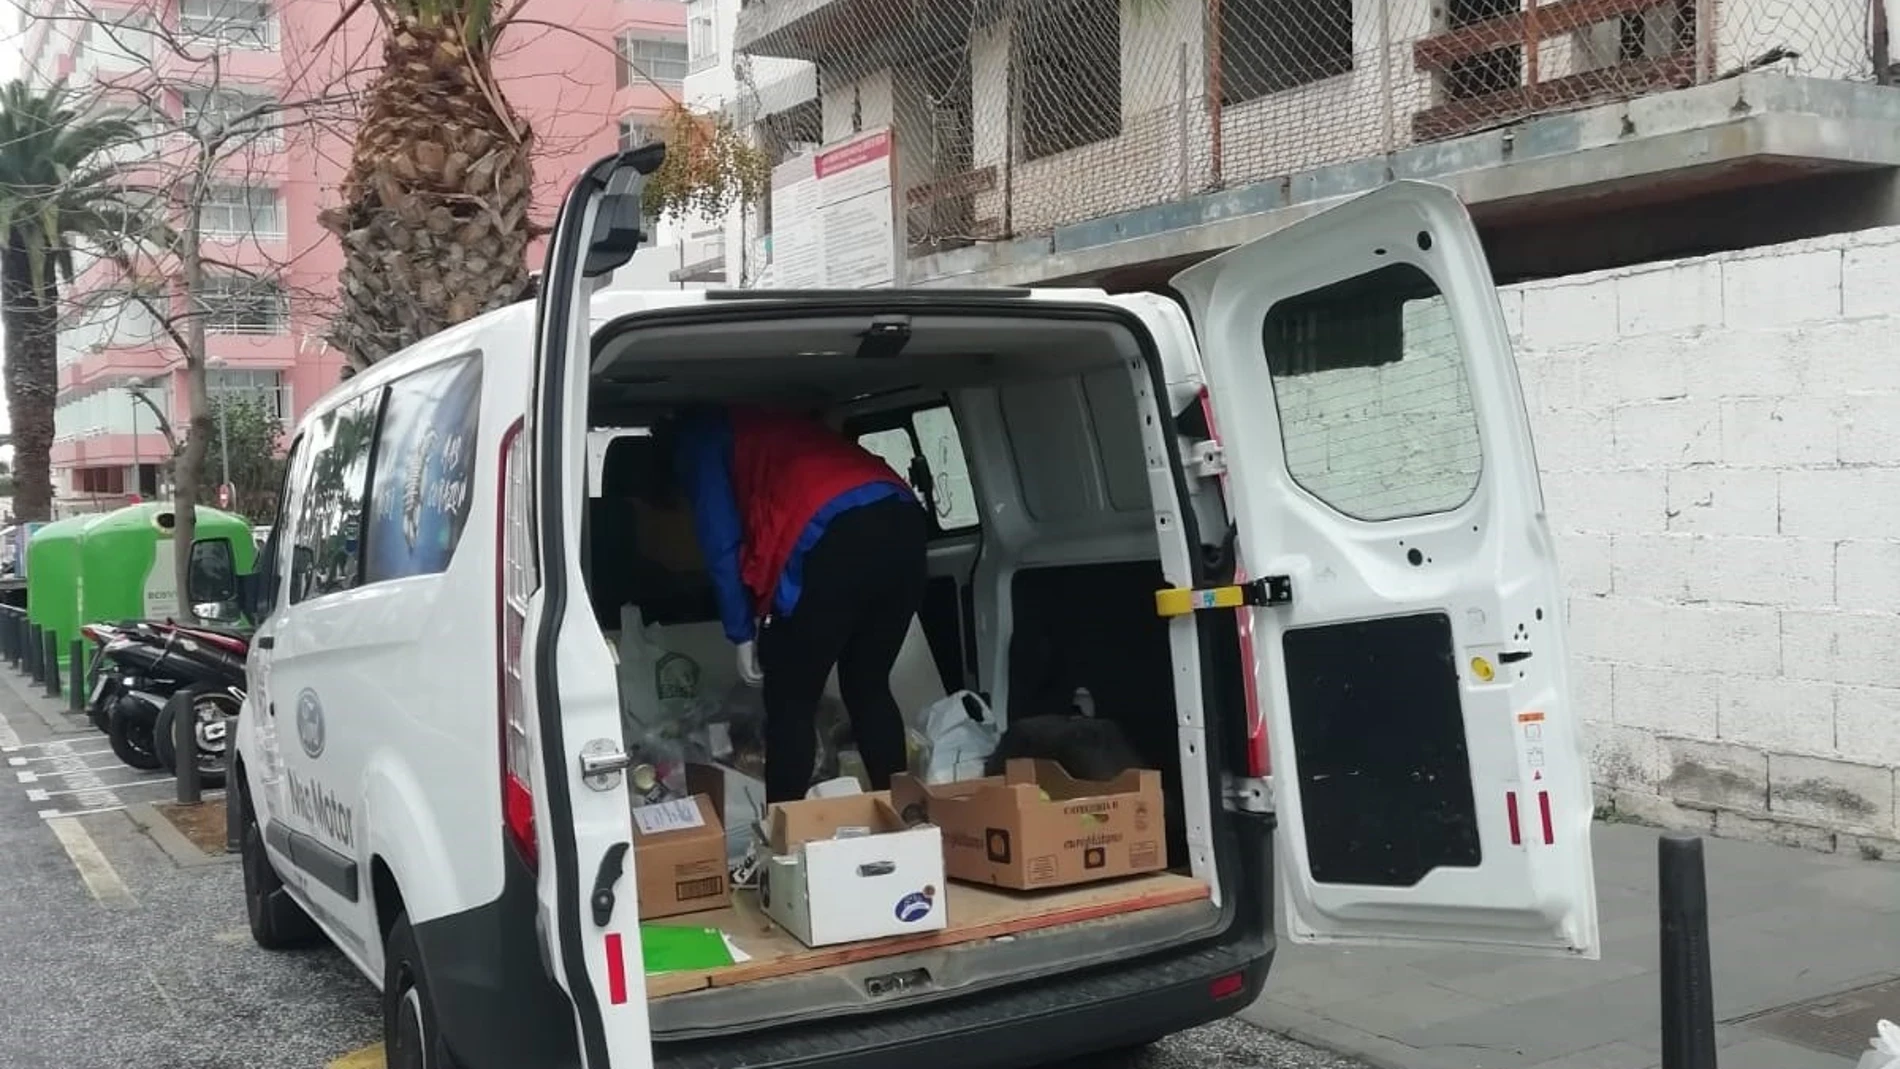 Cáritas Diocesana de Tenerife refuerza sus acciones de atención a los más vulnerables durante el estado de alarma